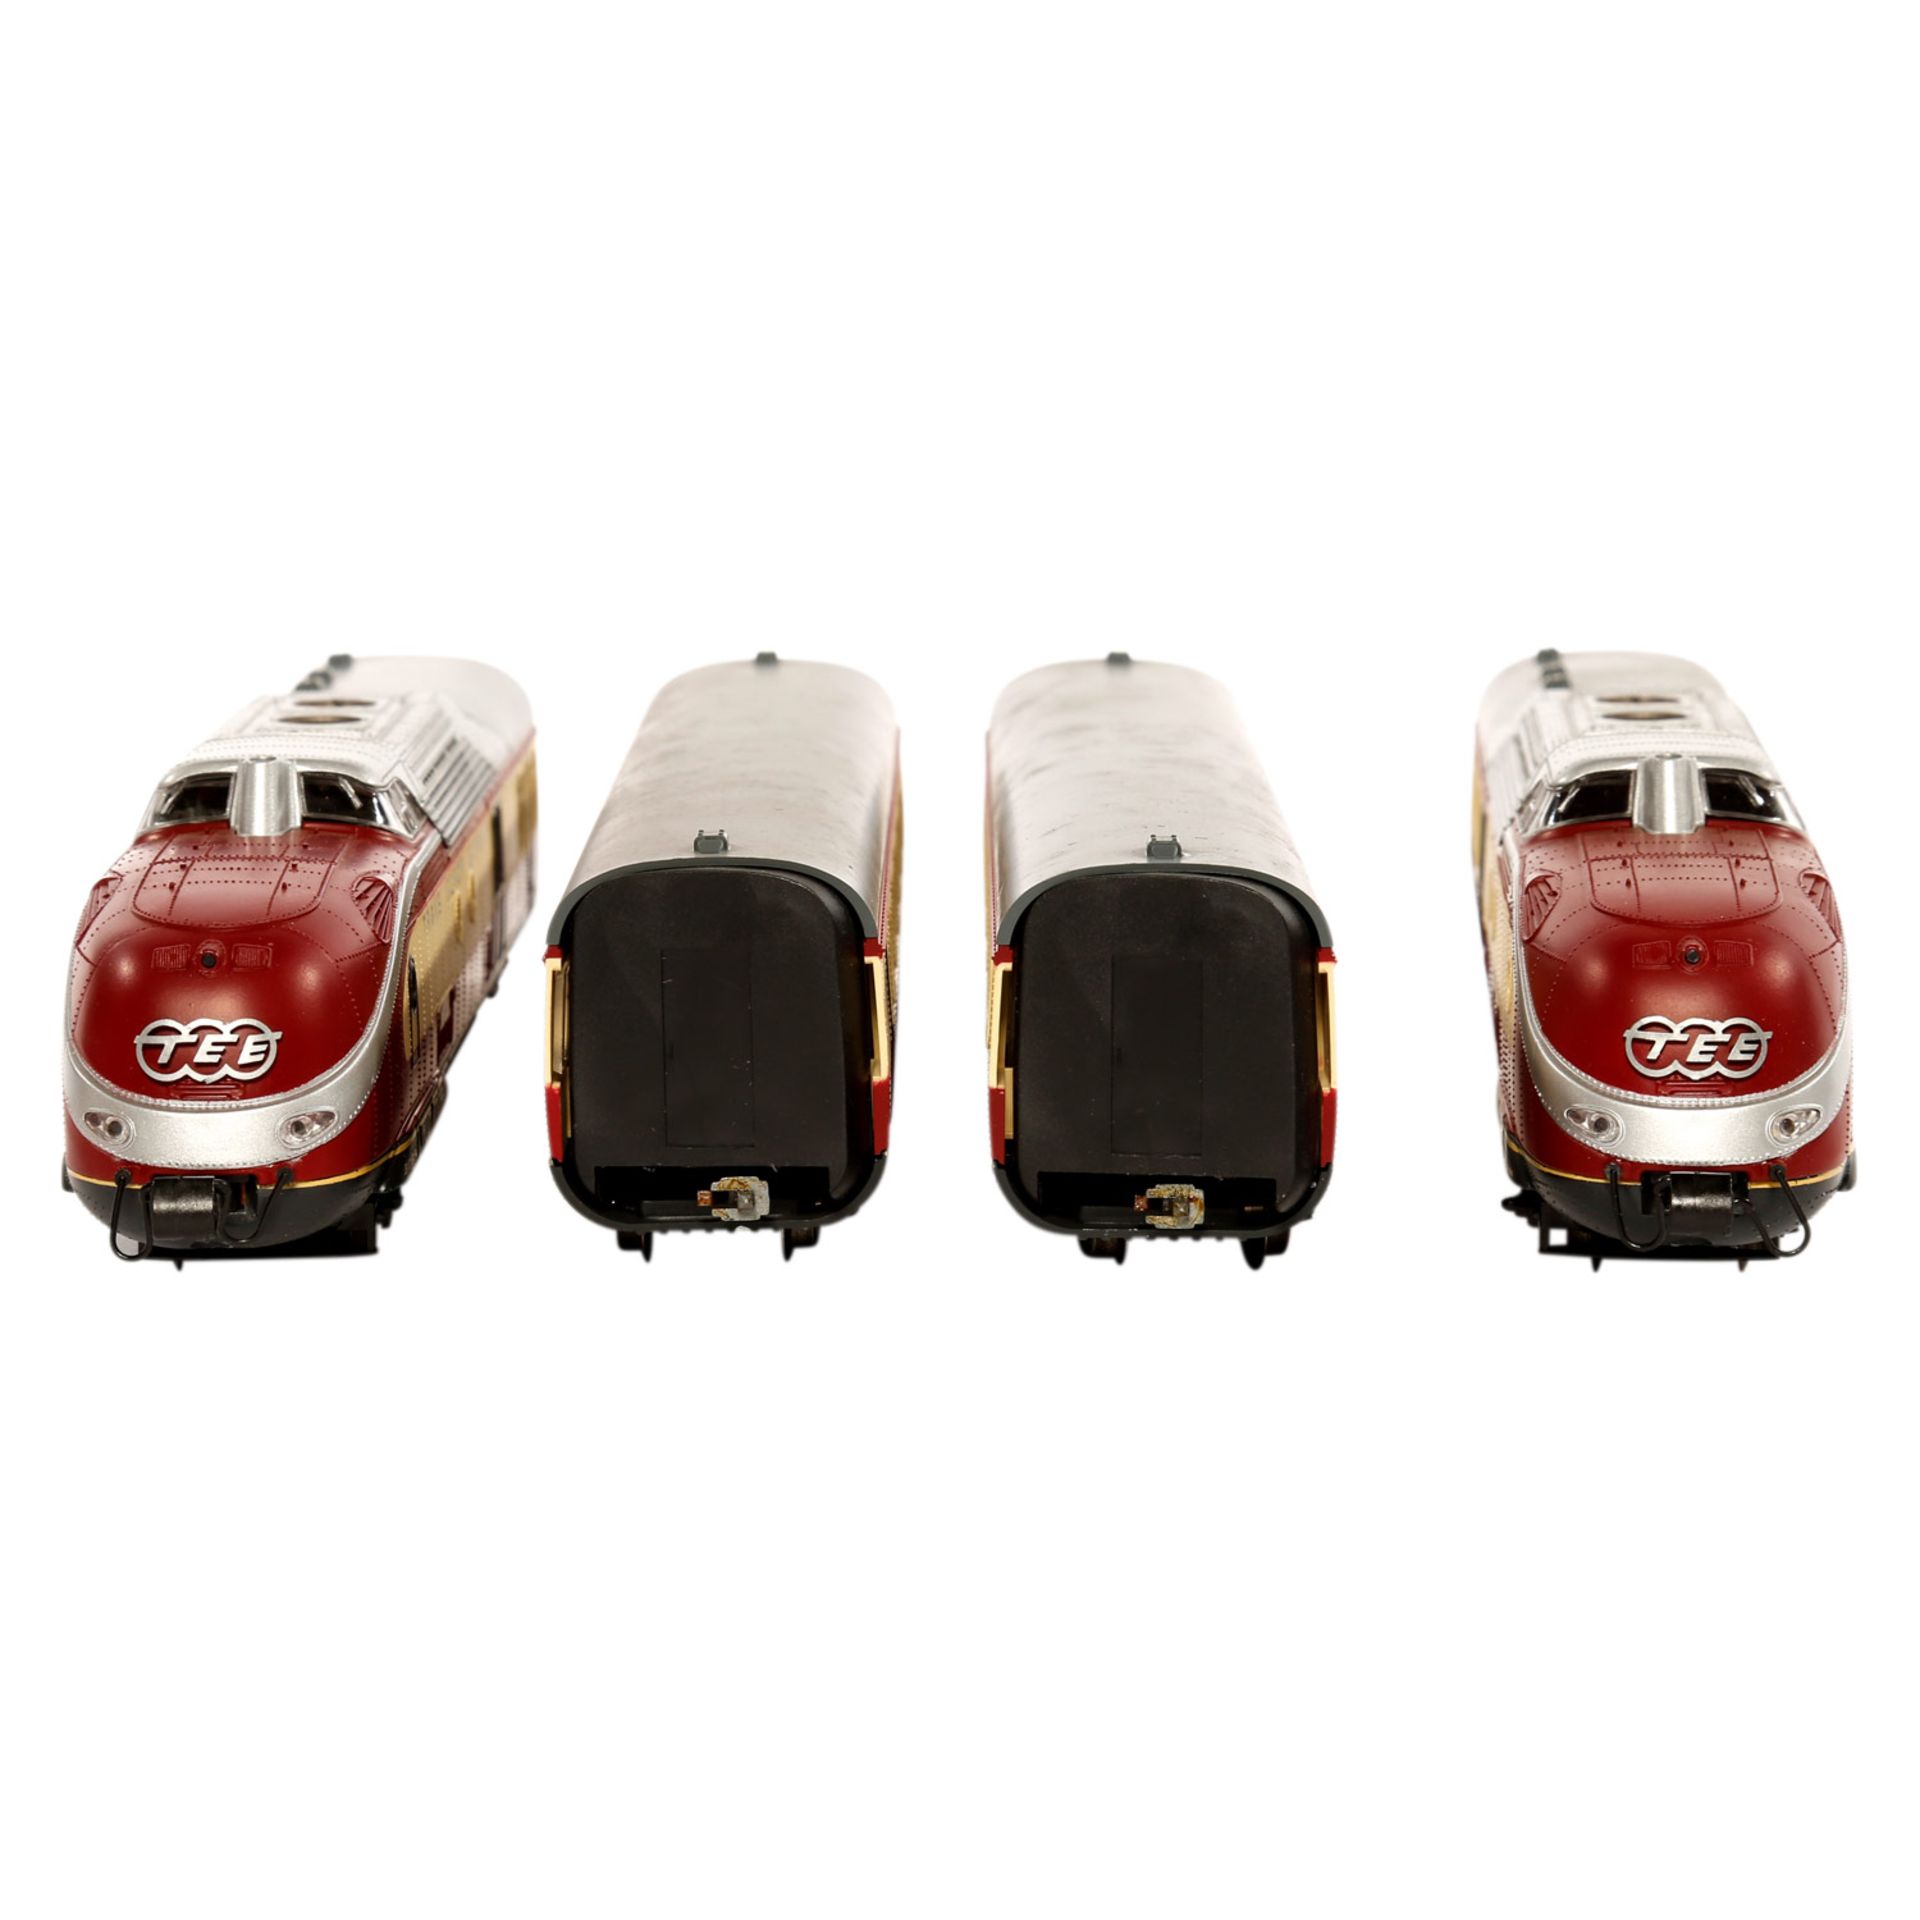 ROCO TEE-Dieseltriebzug 14183A, Spur H0, Kunststoff-Gehäuse, beige/rot, 4-teilig, bestehend aus 2 - Bild 2 aus 5